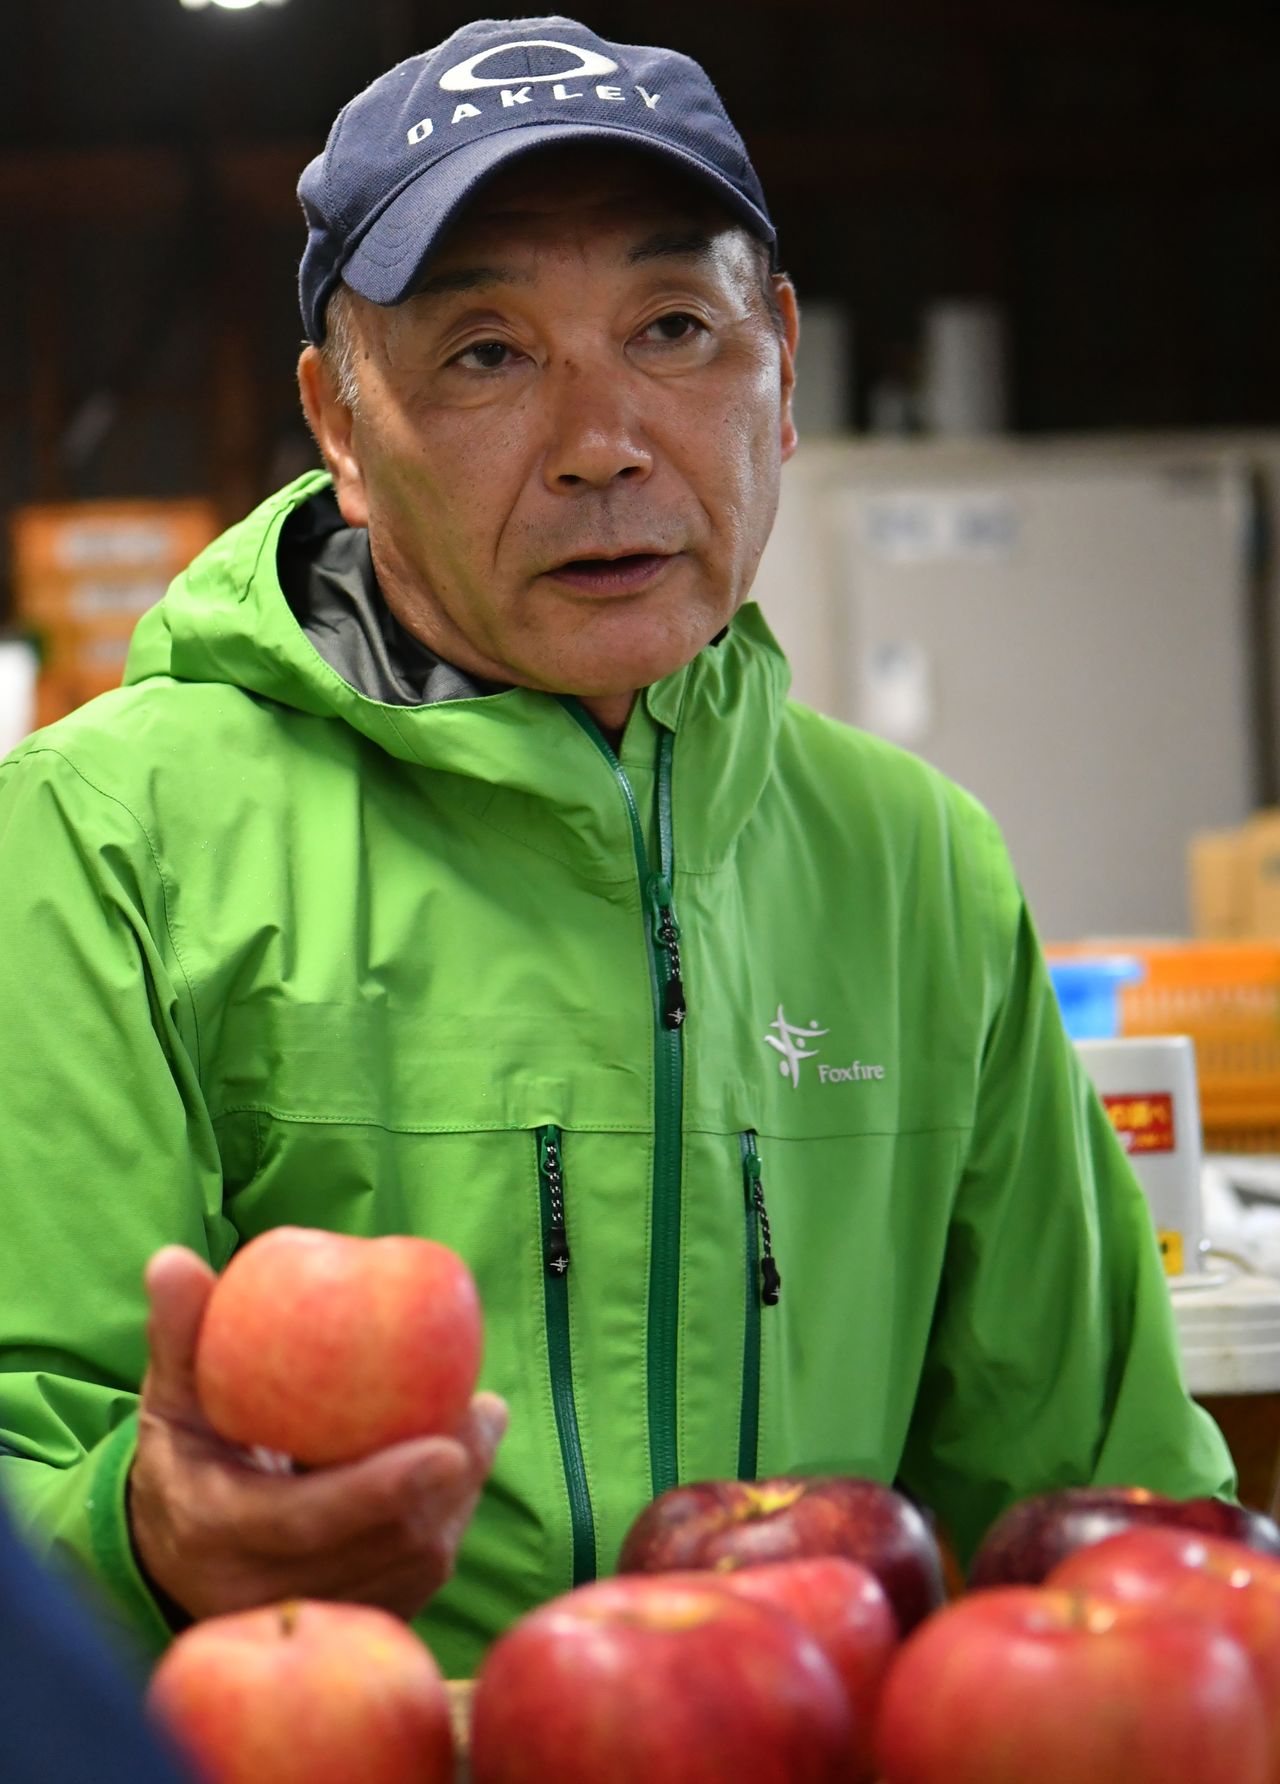 آبى يحمل واحدة من تفاحاته الفاخرة الرائعة المذاق.